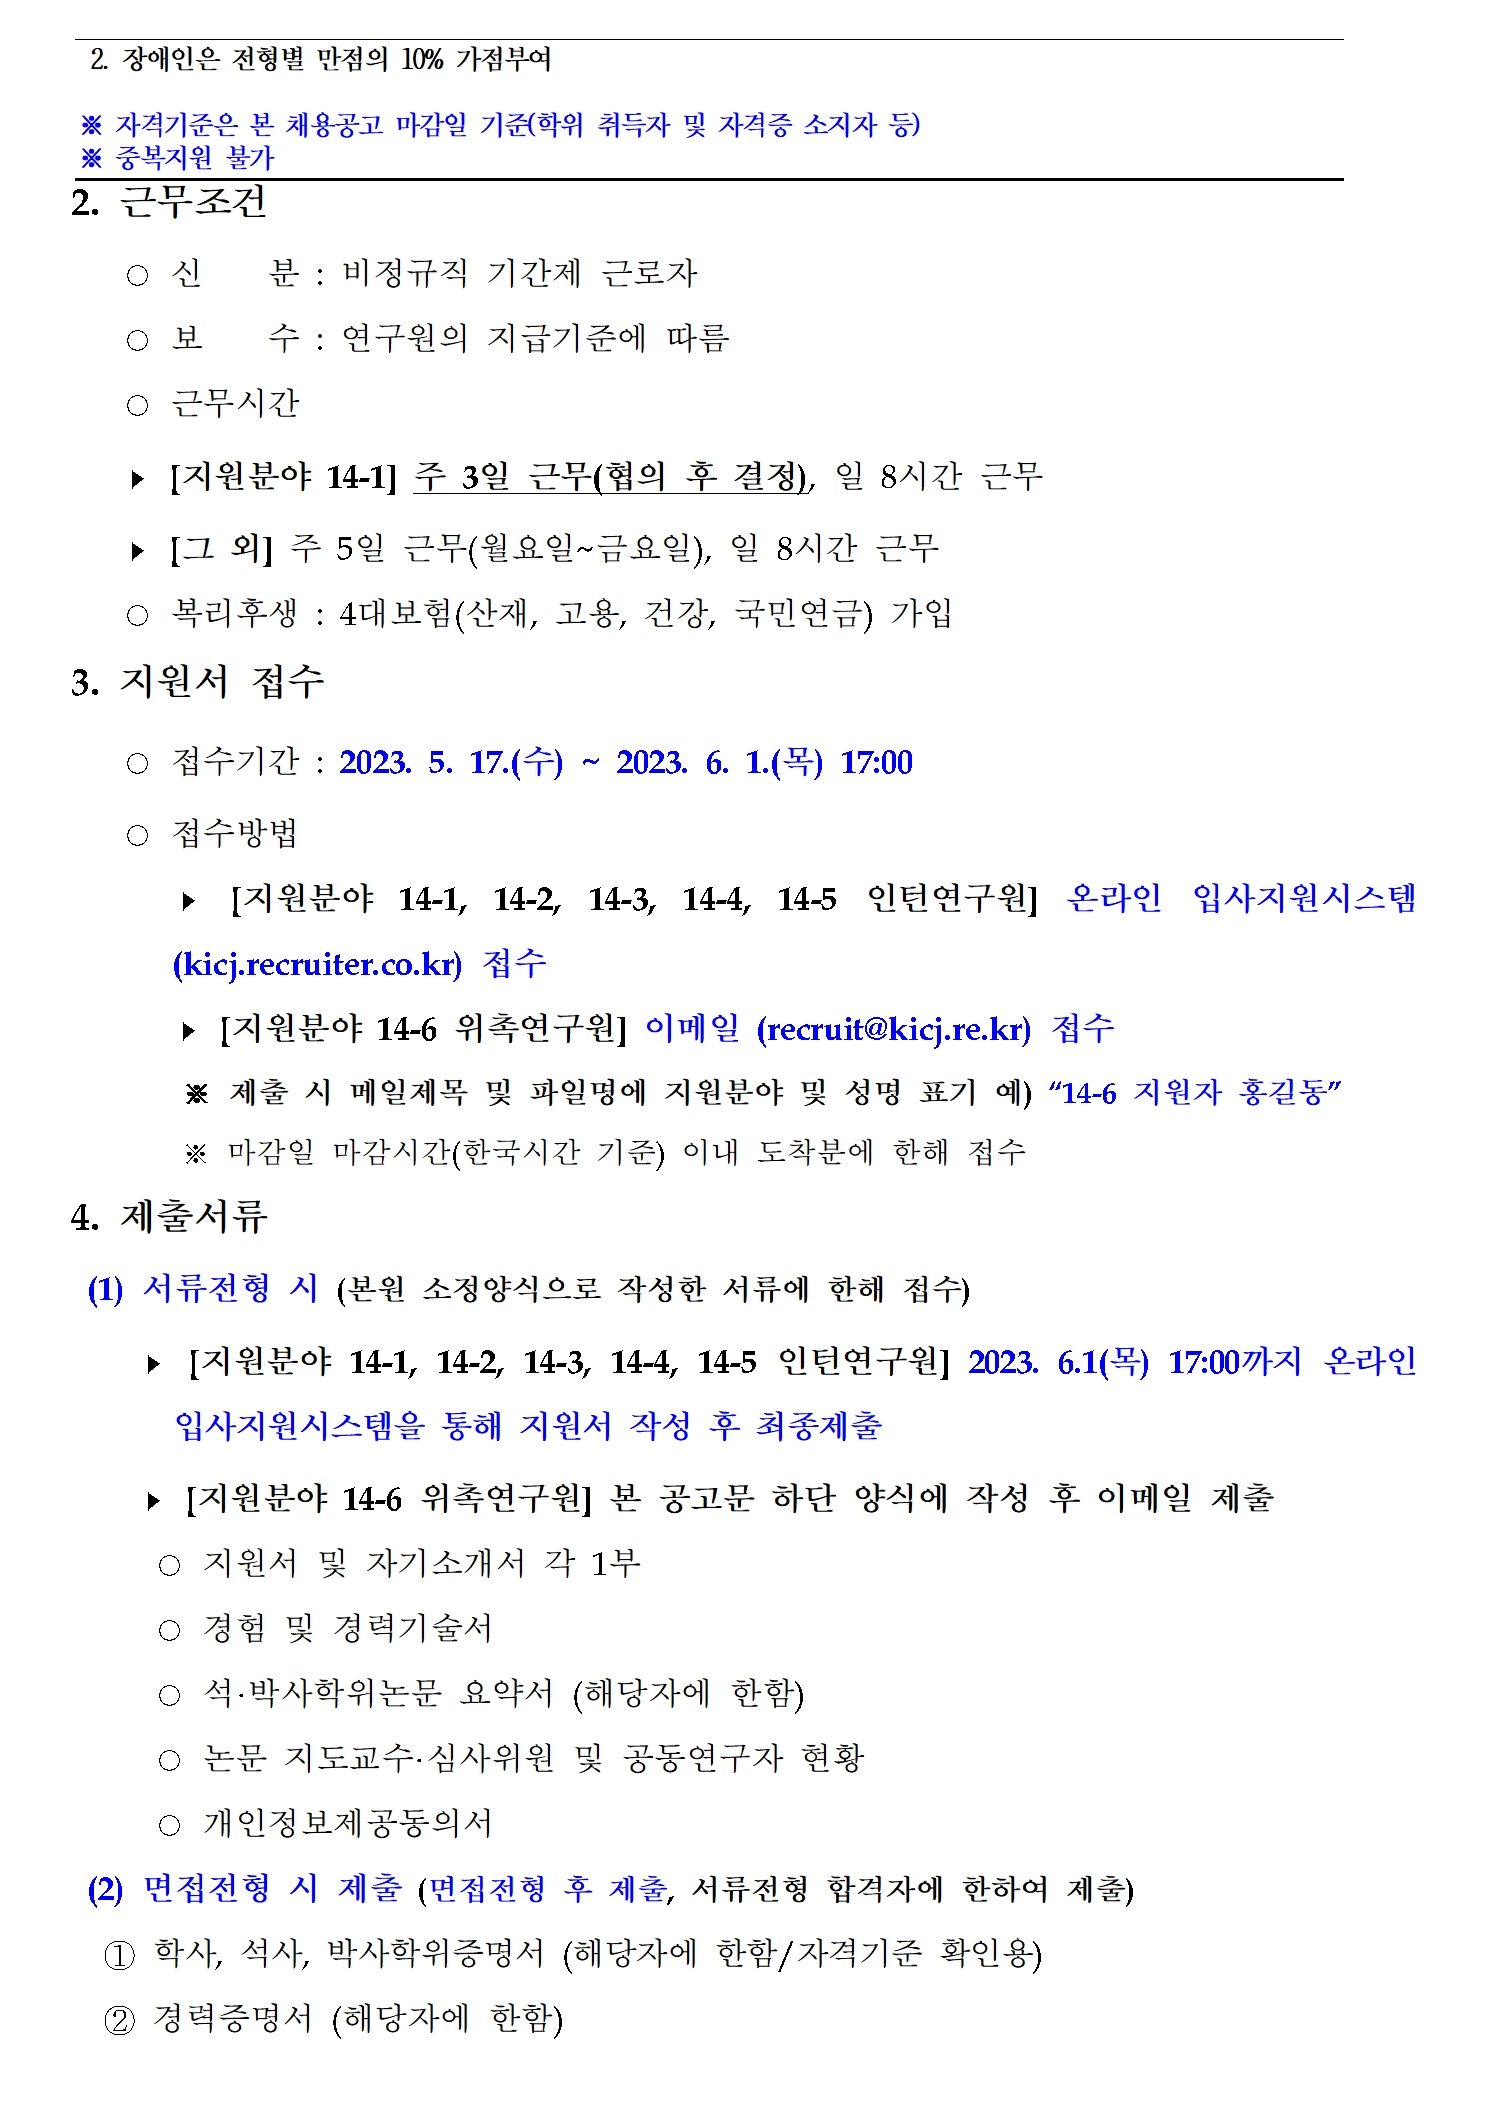 (2/3) 한국형사·법무정책연구원 제14차 채용공고 - 자세한 내용은 하단 참조